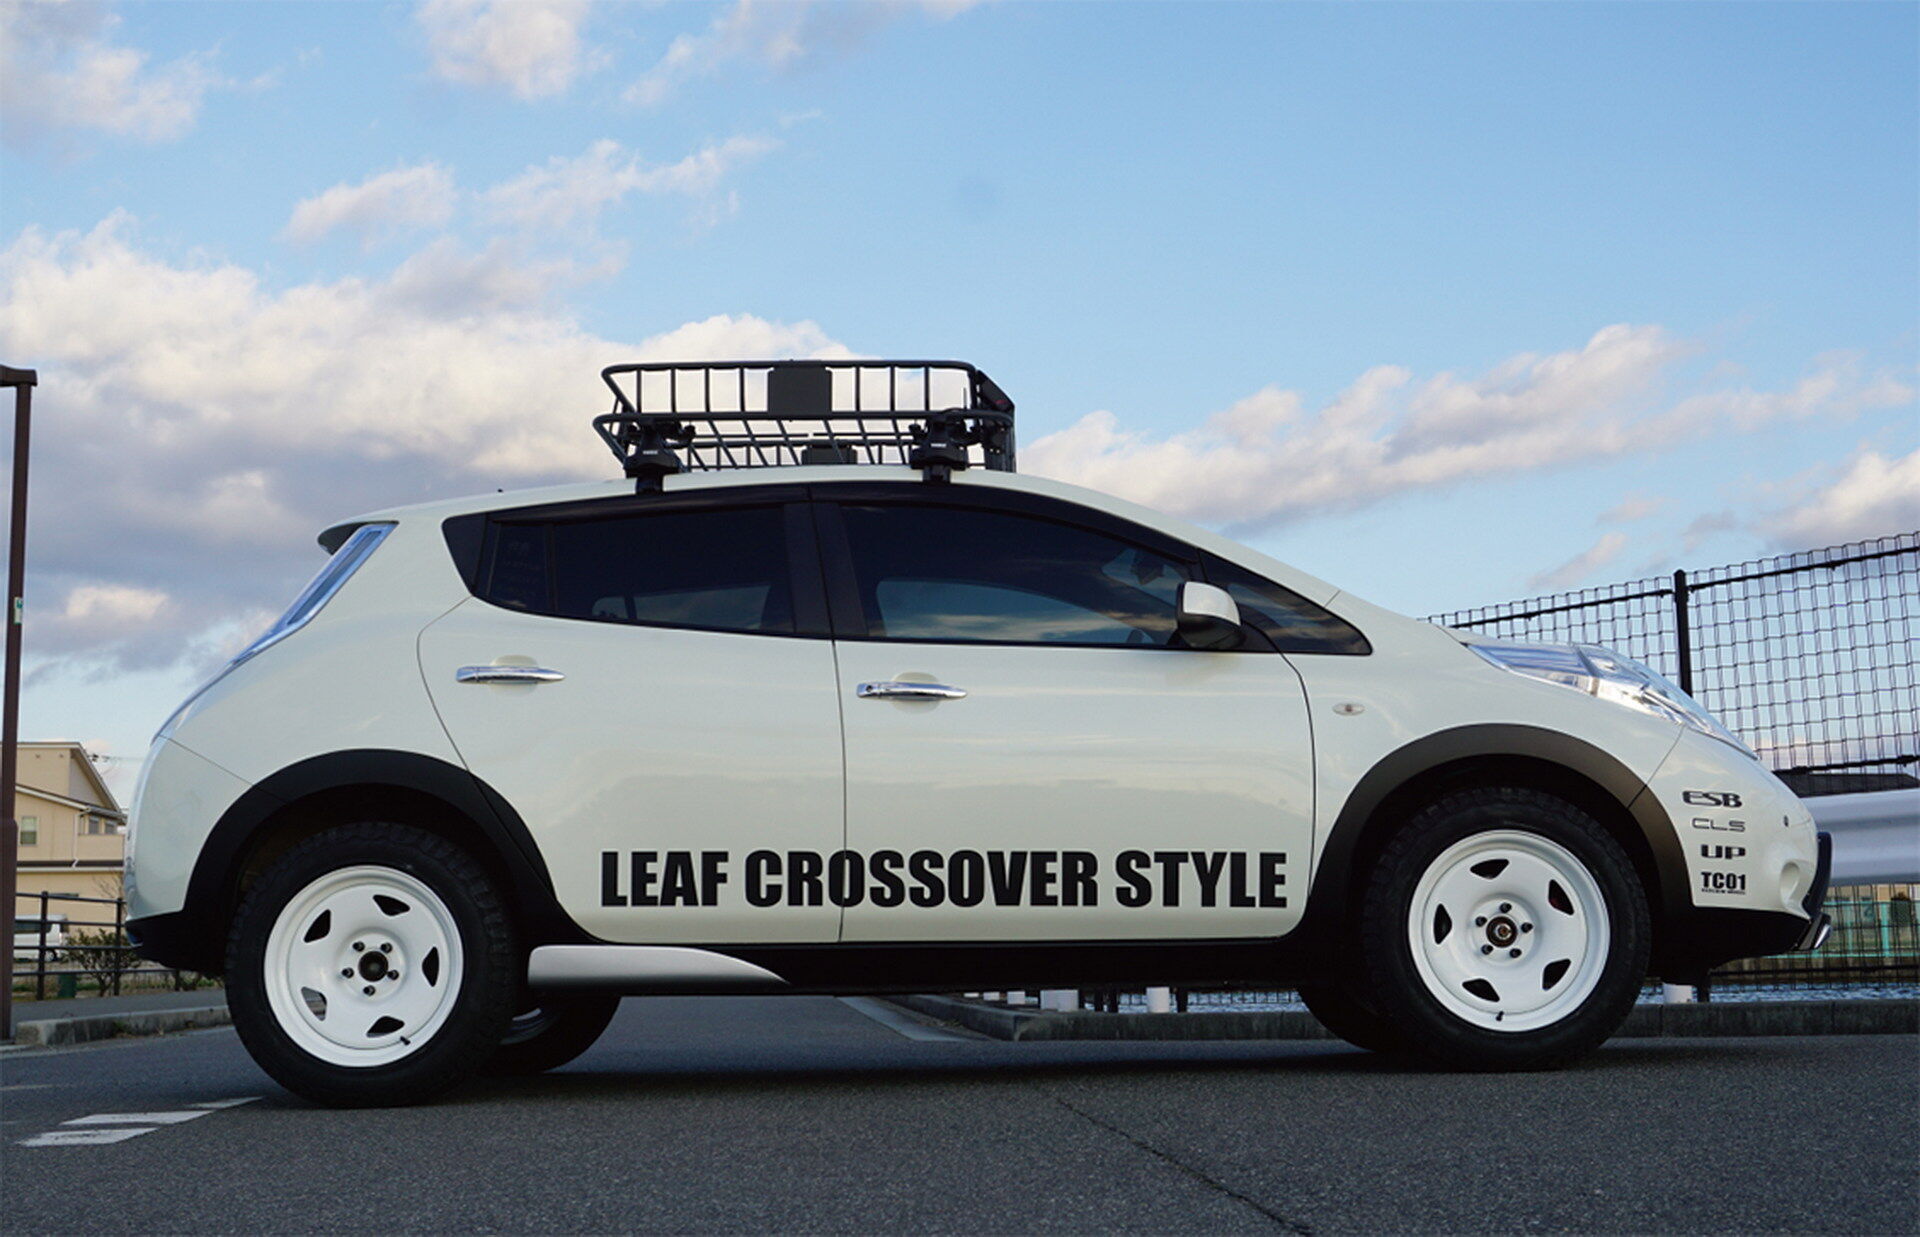 Для створення яскравого образу в стилі SUV, майстри з ESB встановили нові бампери, додали матово-чорні накладки по периметру кузова та на крилах